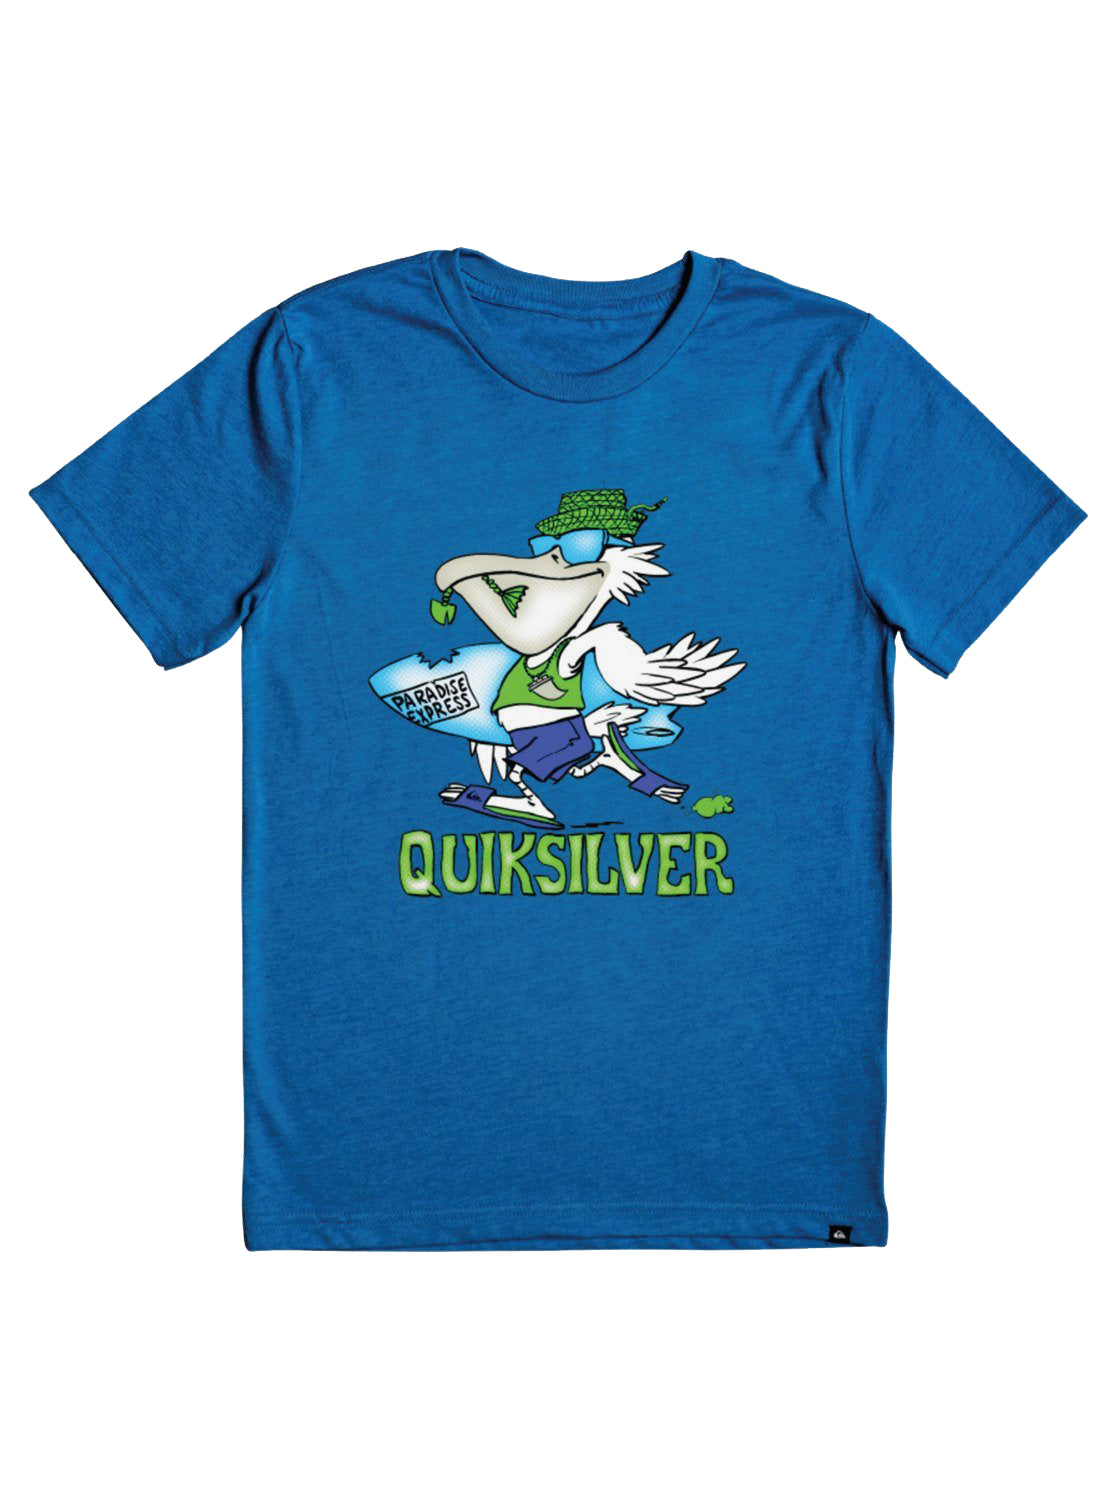 Quiksilver Kids Pelican Shred SS Tee BQVH 3